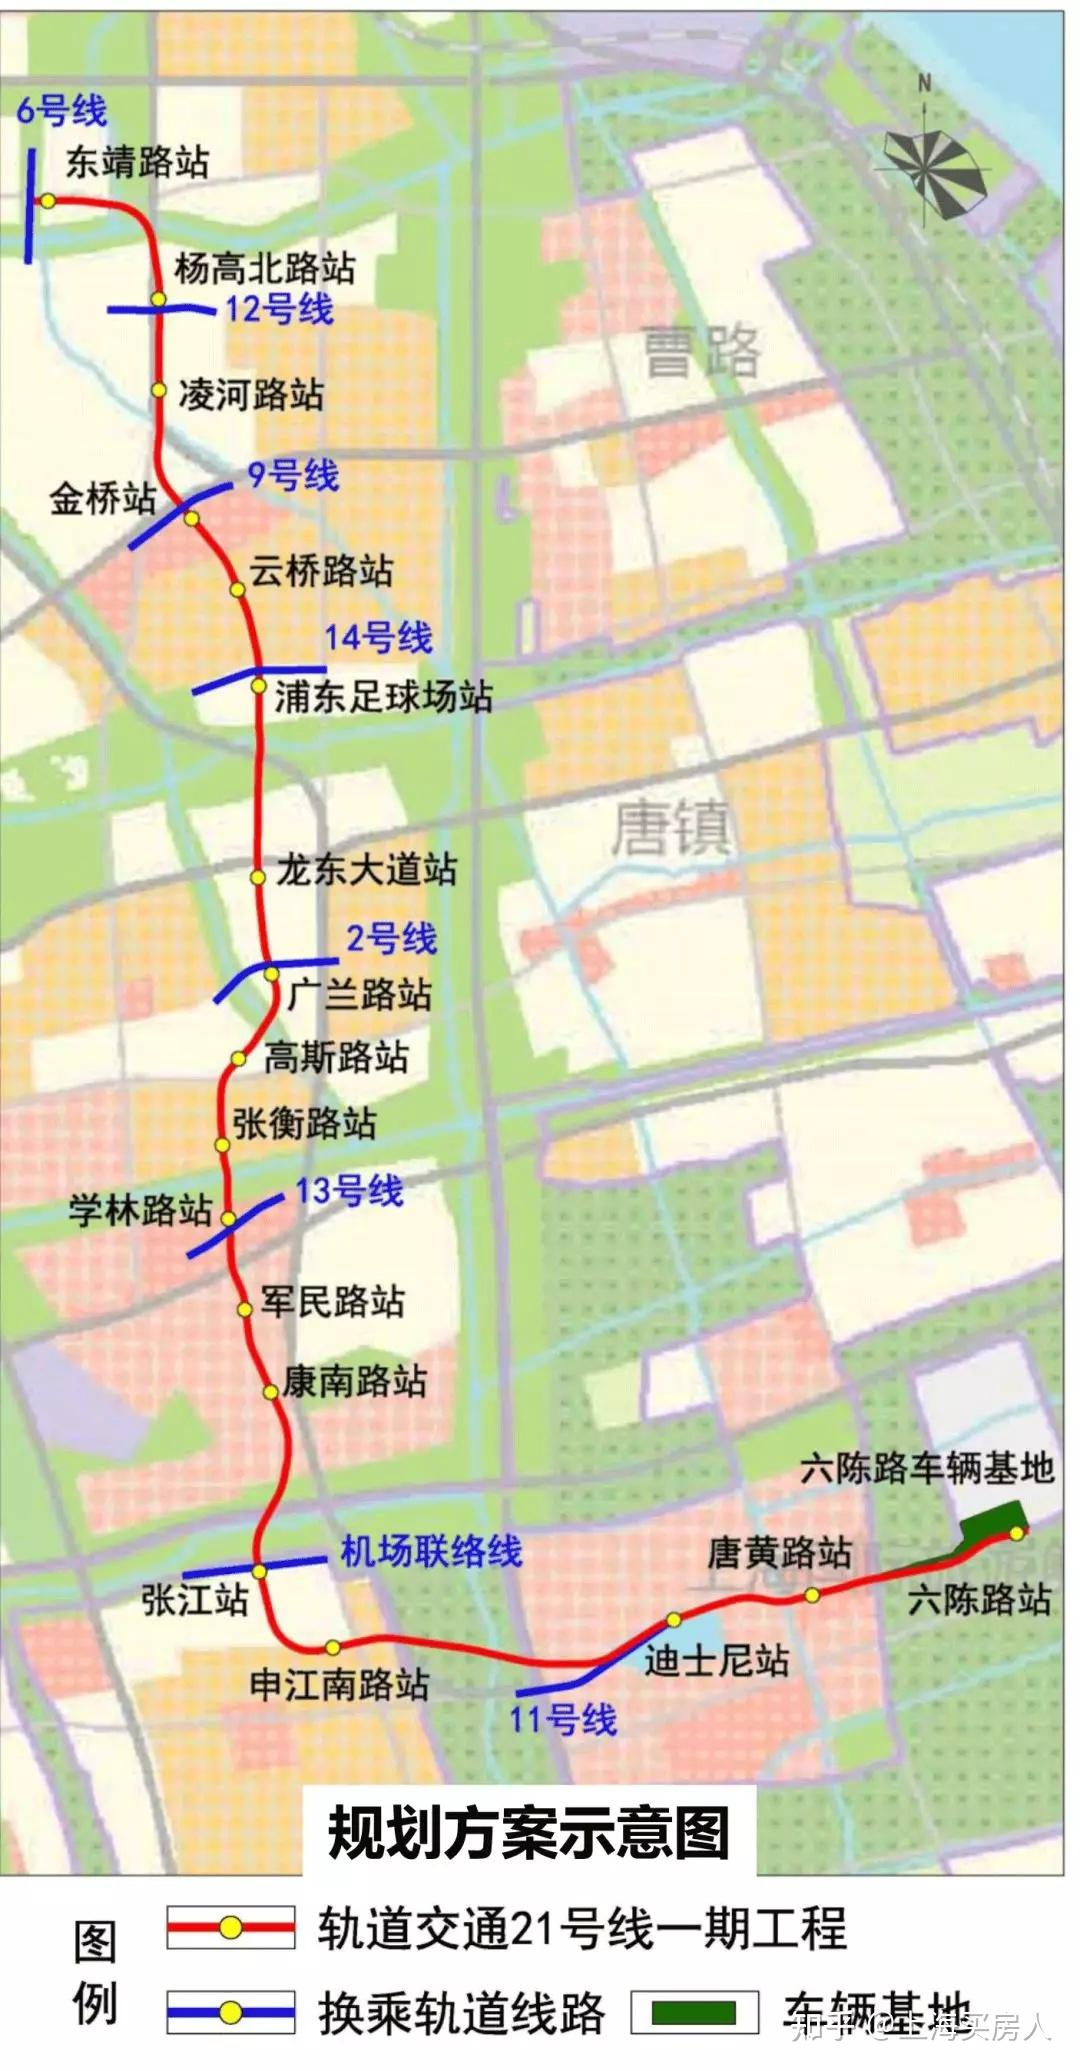 最新上海地铁规划来了含12号线17号线西延18192021号线